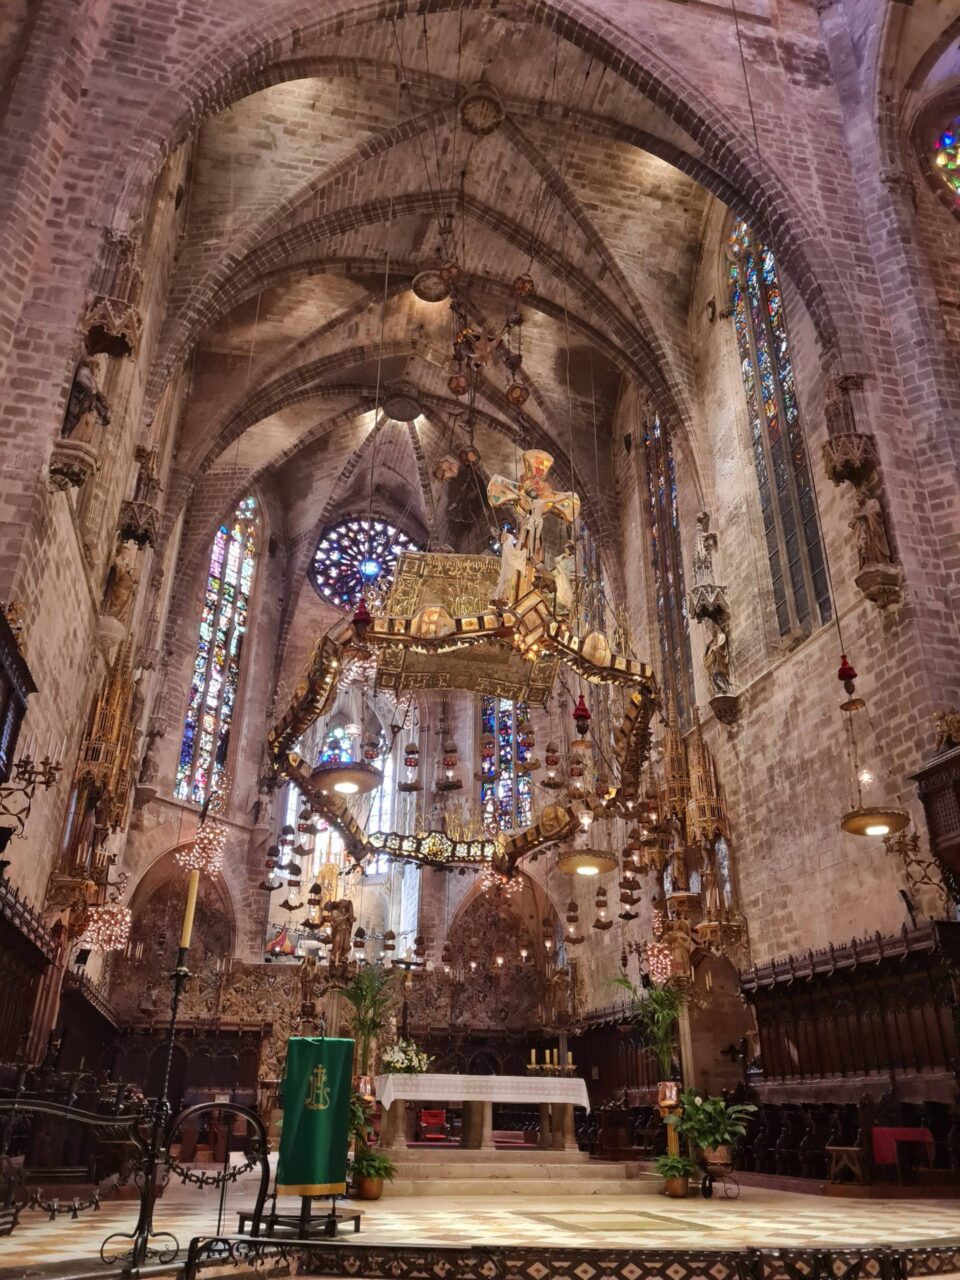 Il caleidoscopico baldacchino che sovrasta l'altare della Cattedrale di Palma di Maiorca, voluto da Gaudì